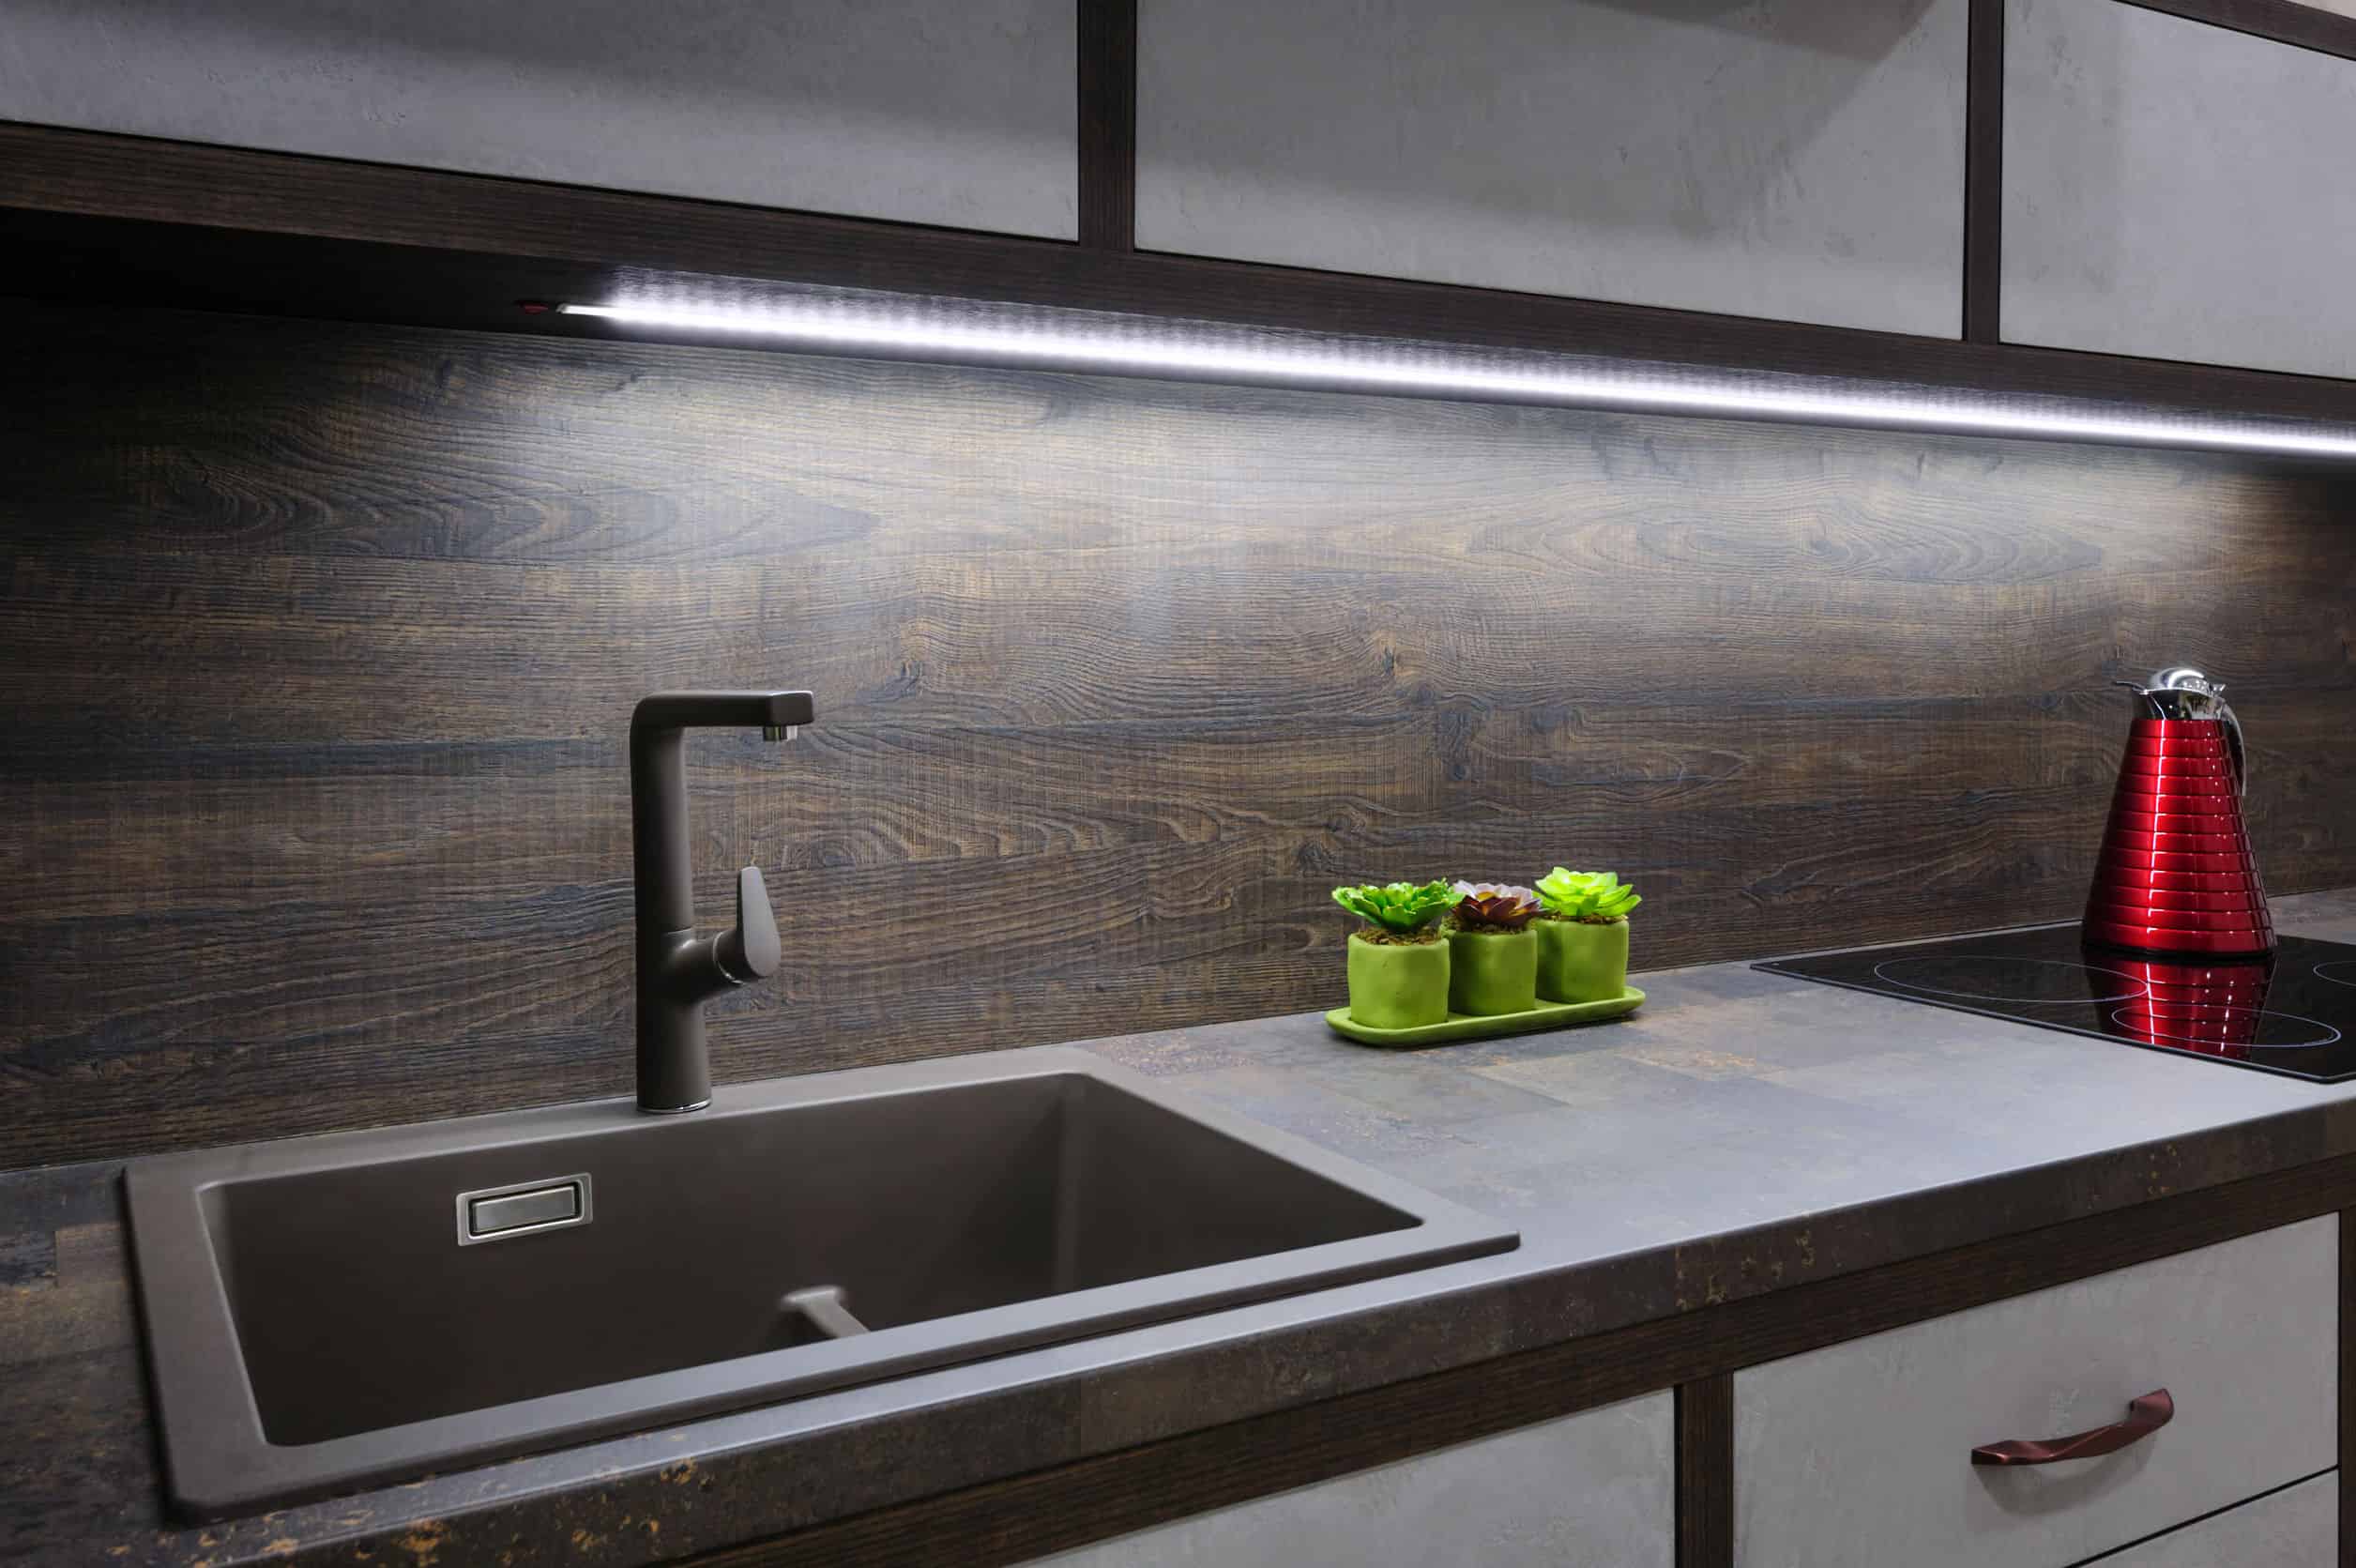 Iluminación LED en cocinas: Por qué elegirla y dónde instalarla